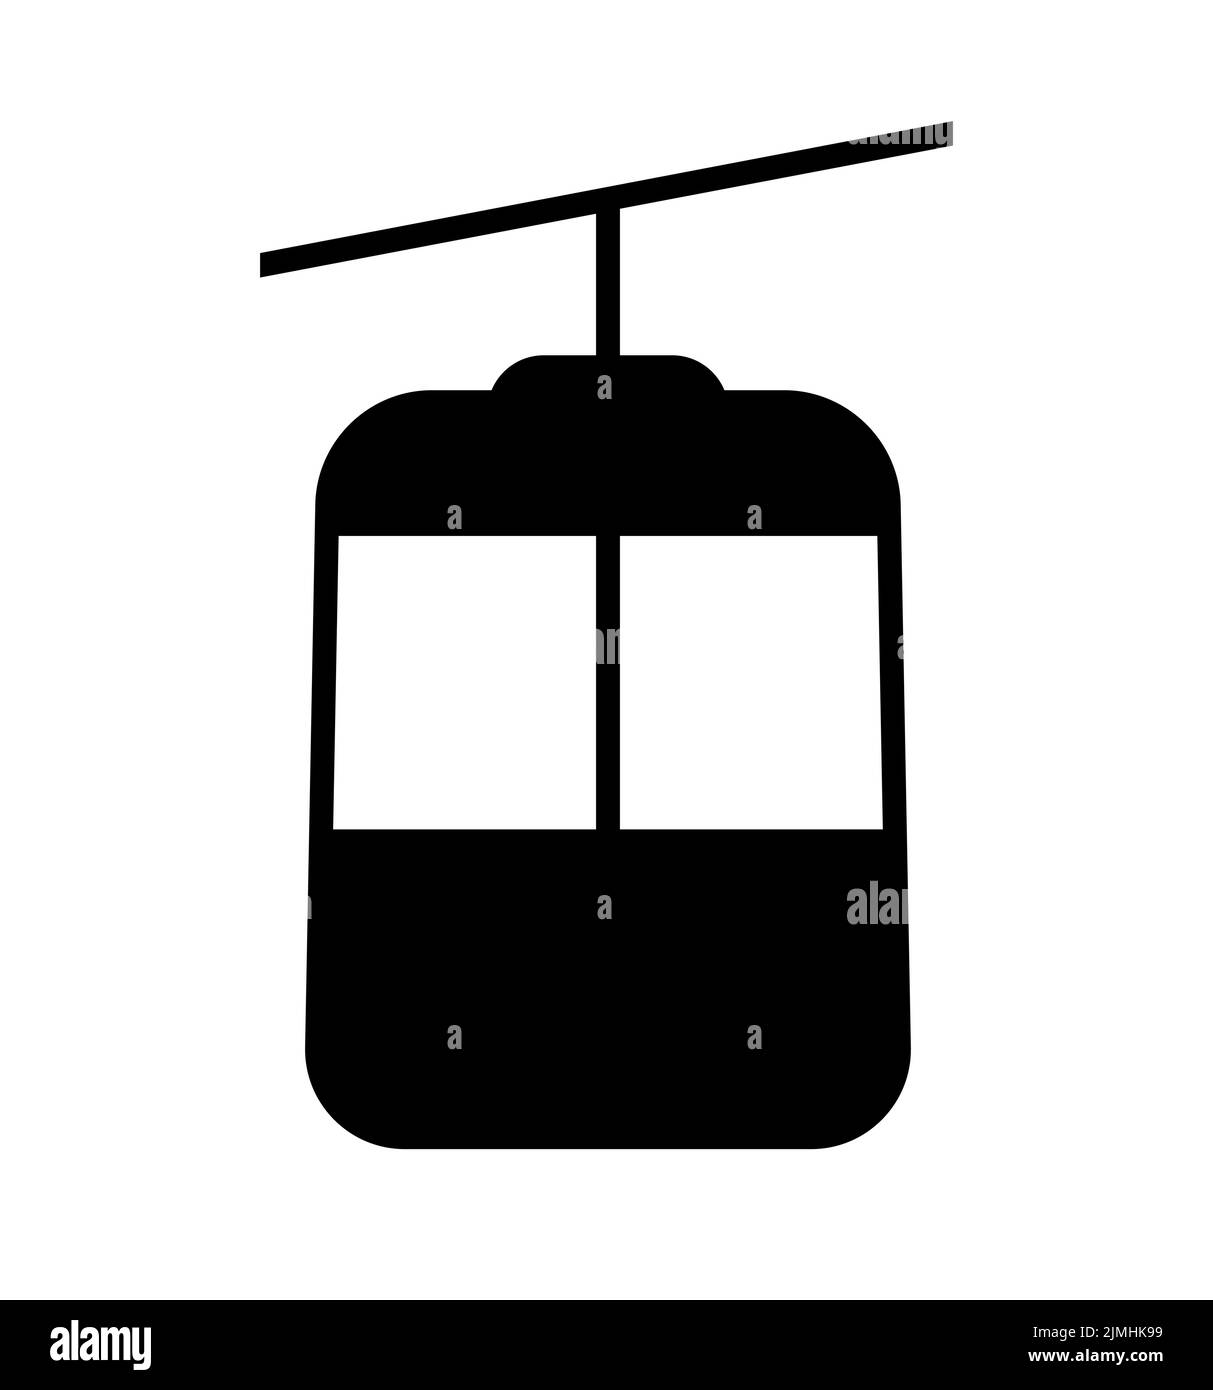 Cable car mountain lift vector icon symbol Stock Vector